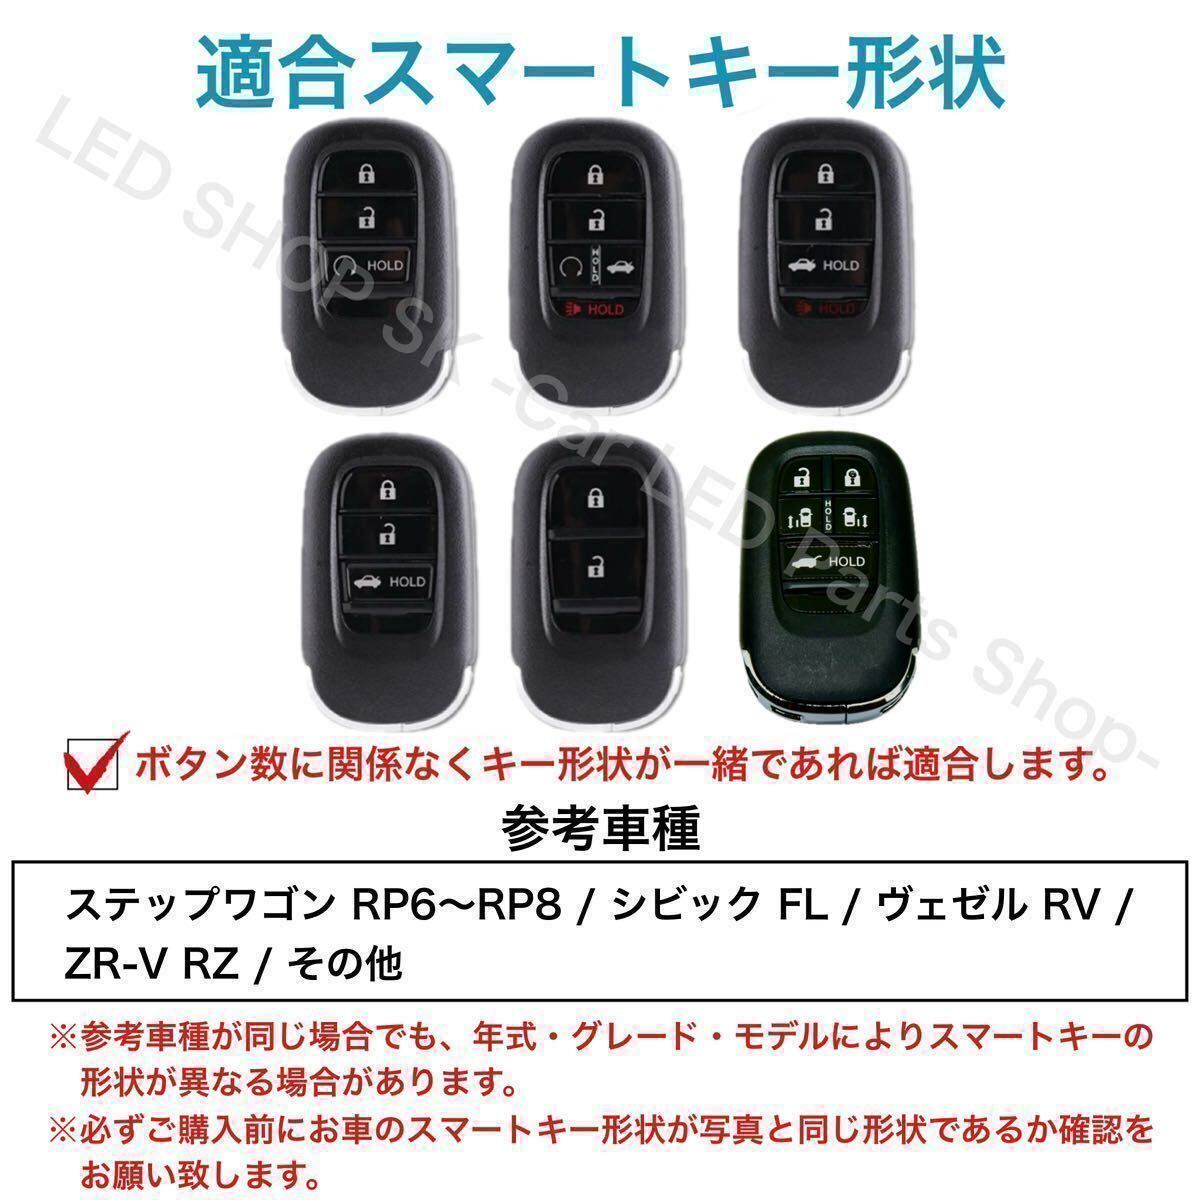 【送料無料】スマートキーケース 新型ステップワゴン RP6 RP7 RP8 シビック ヴェゼル ZR-V ピンク レザー調 キーカバー キーケース _画像5